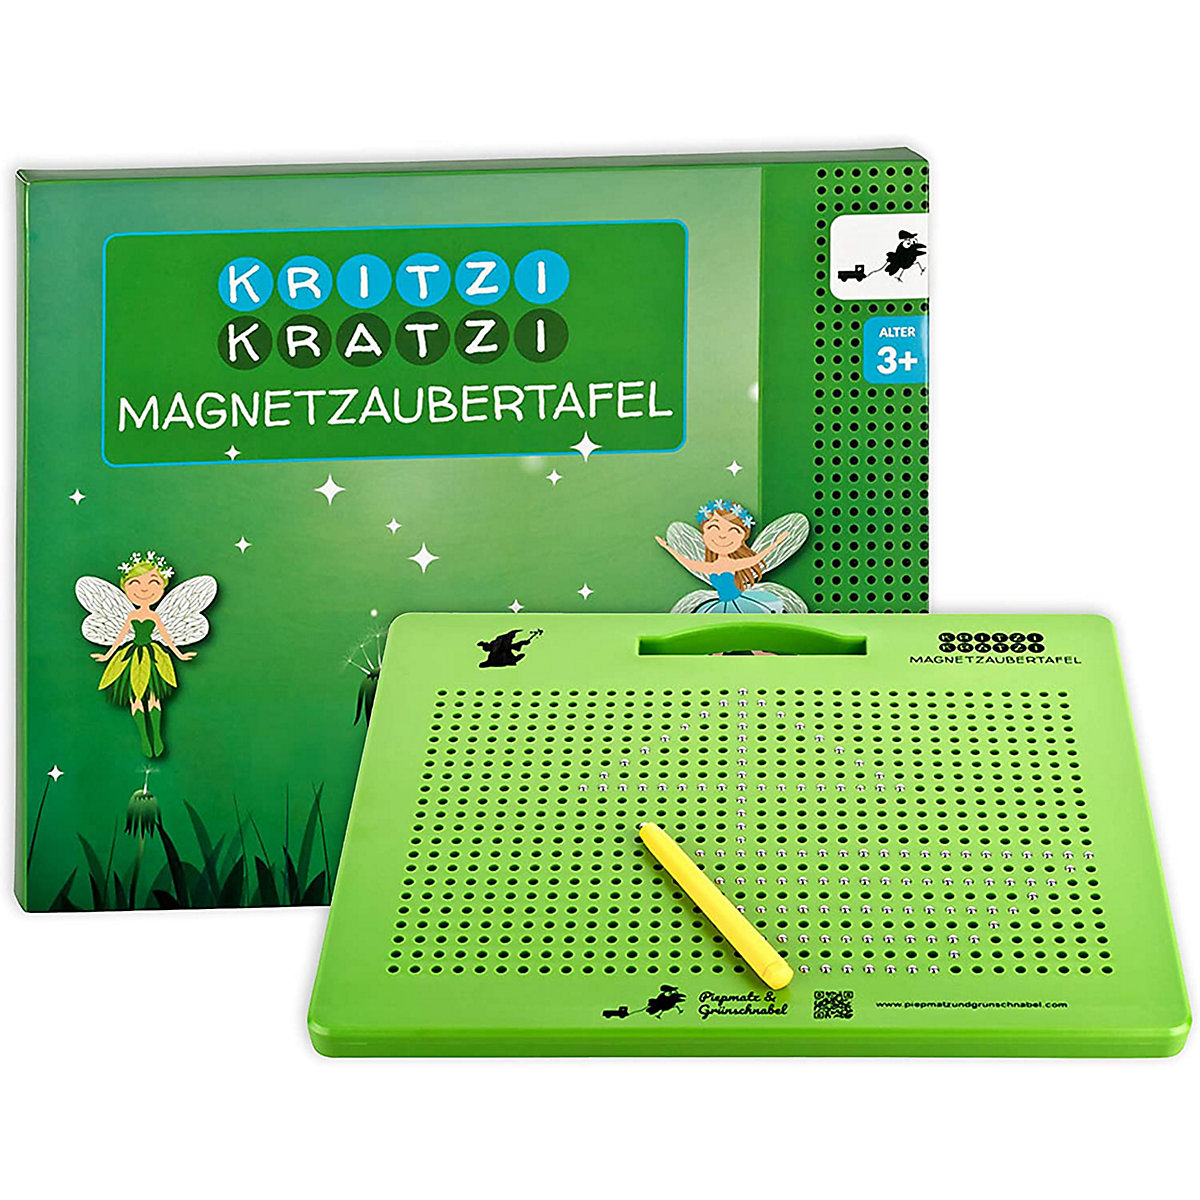 Piepmatz und Grünschnabel Magnetzeichentafel-Zauberei mit Magnetismus-Feinmotorikübung Magentzeichentafel grün